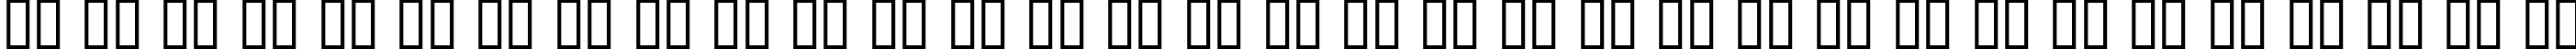 Пример написания русского алфавита шрифтом Xenowort